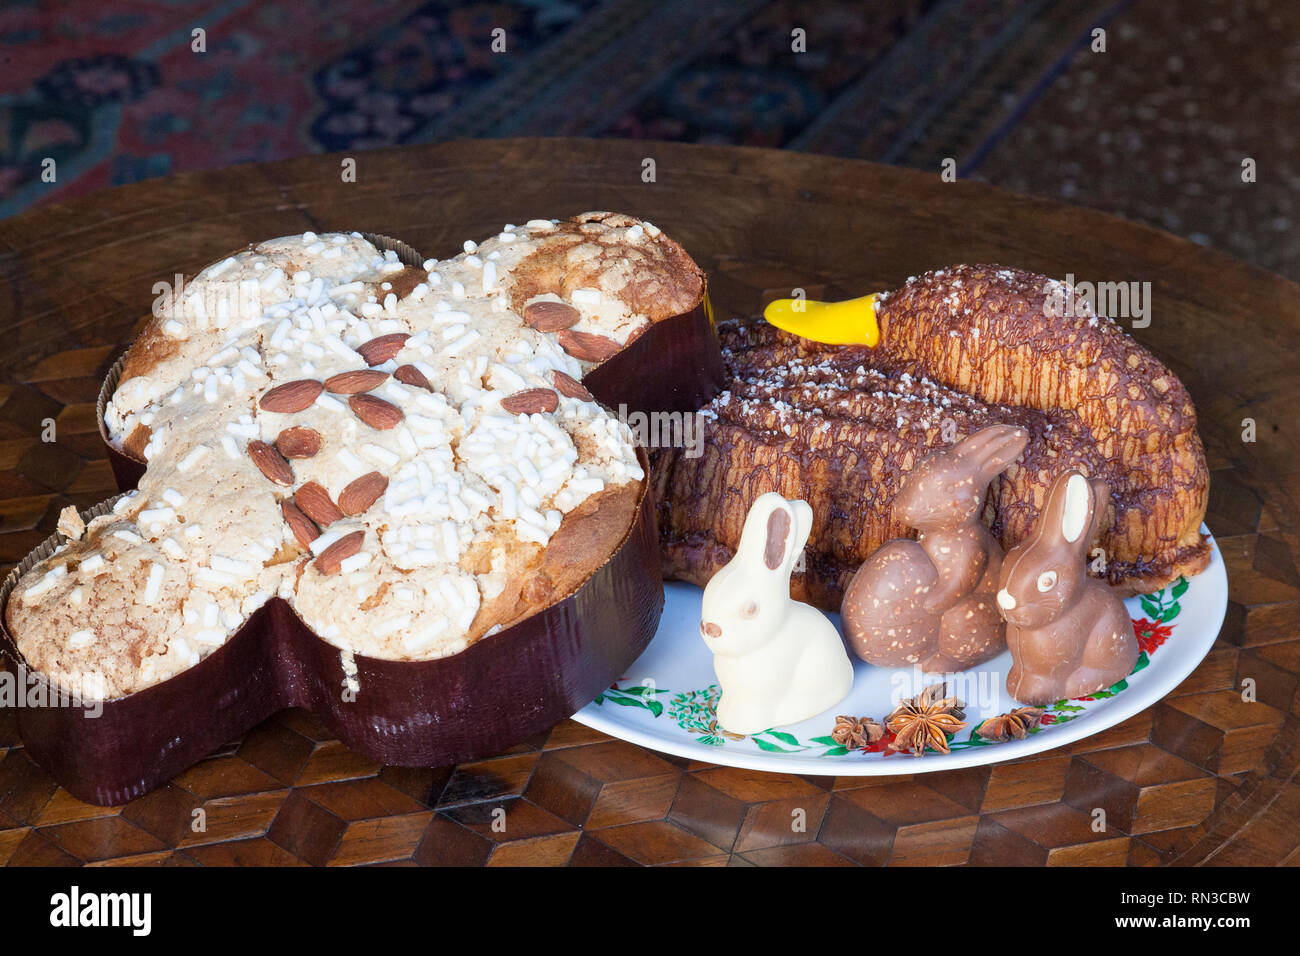 Italienische Ostern Kuchen, Columba oder Taube Kuchen mit Gewürze, Nüsse und getrocknete Früchte mit Schokolade Eier und eine Ente geformte spicy orange Ostern cak Stockfoto